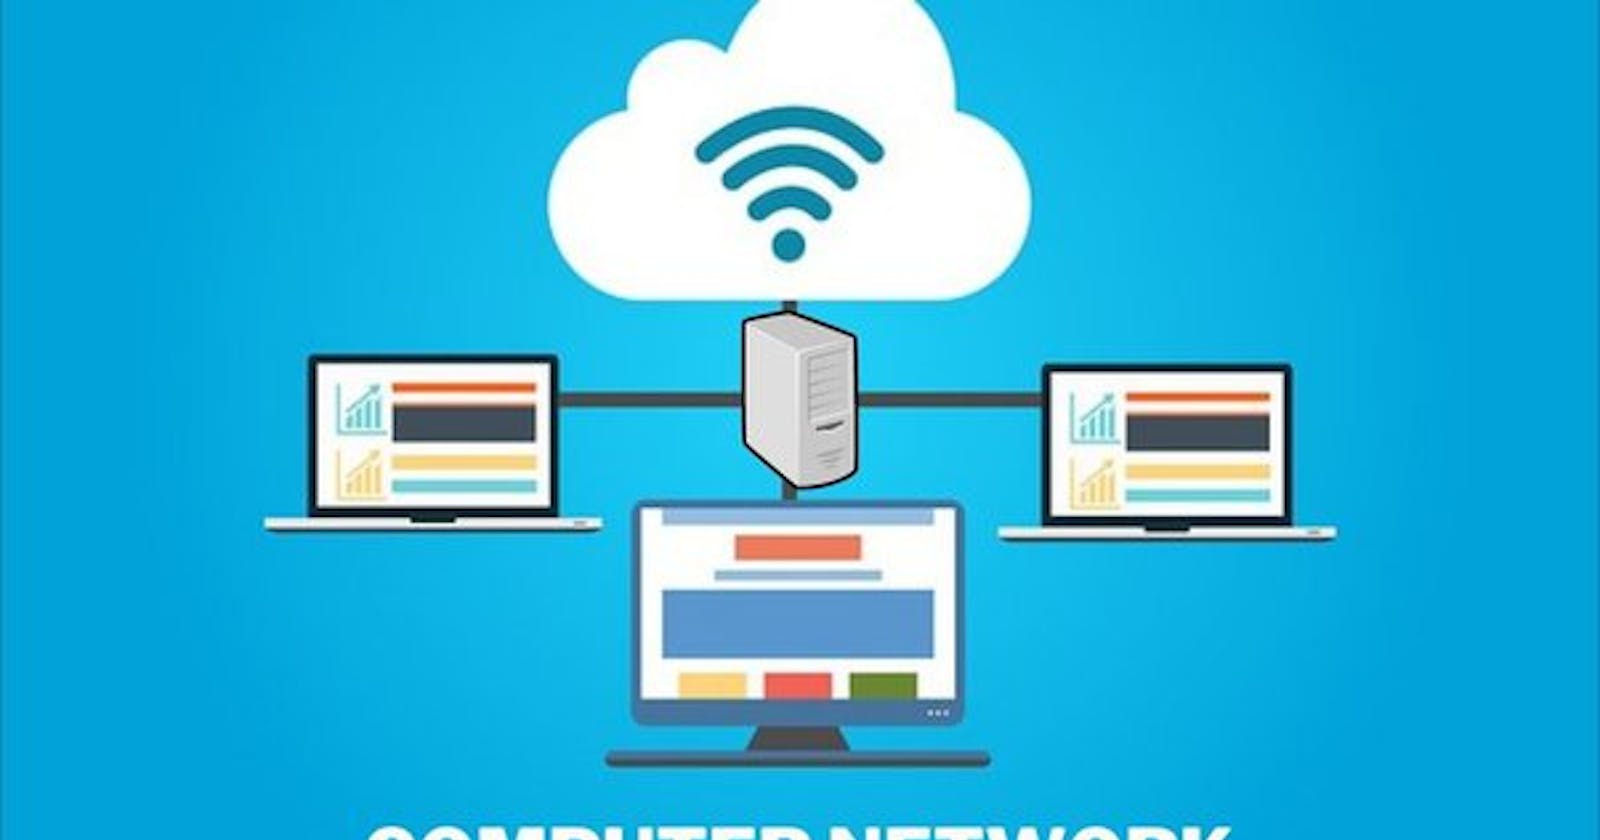 Computer networking fundamentals